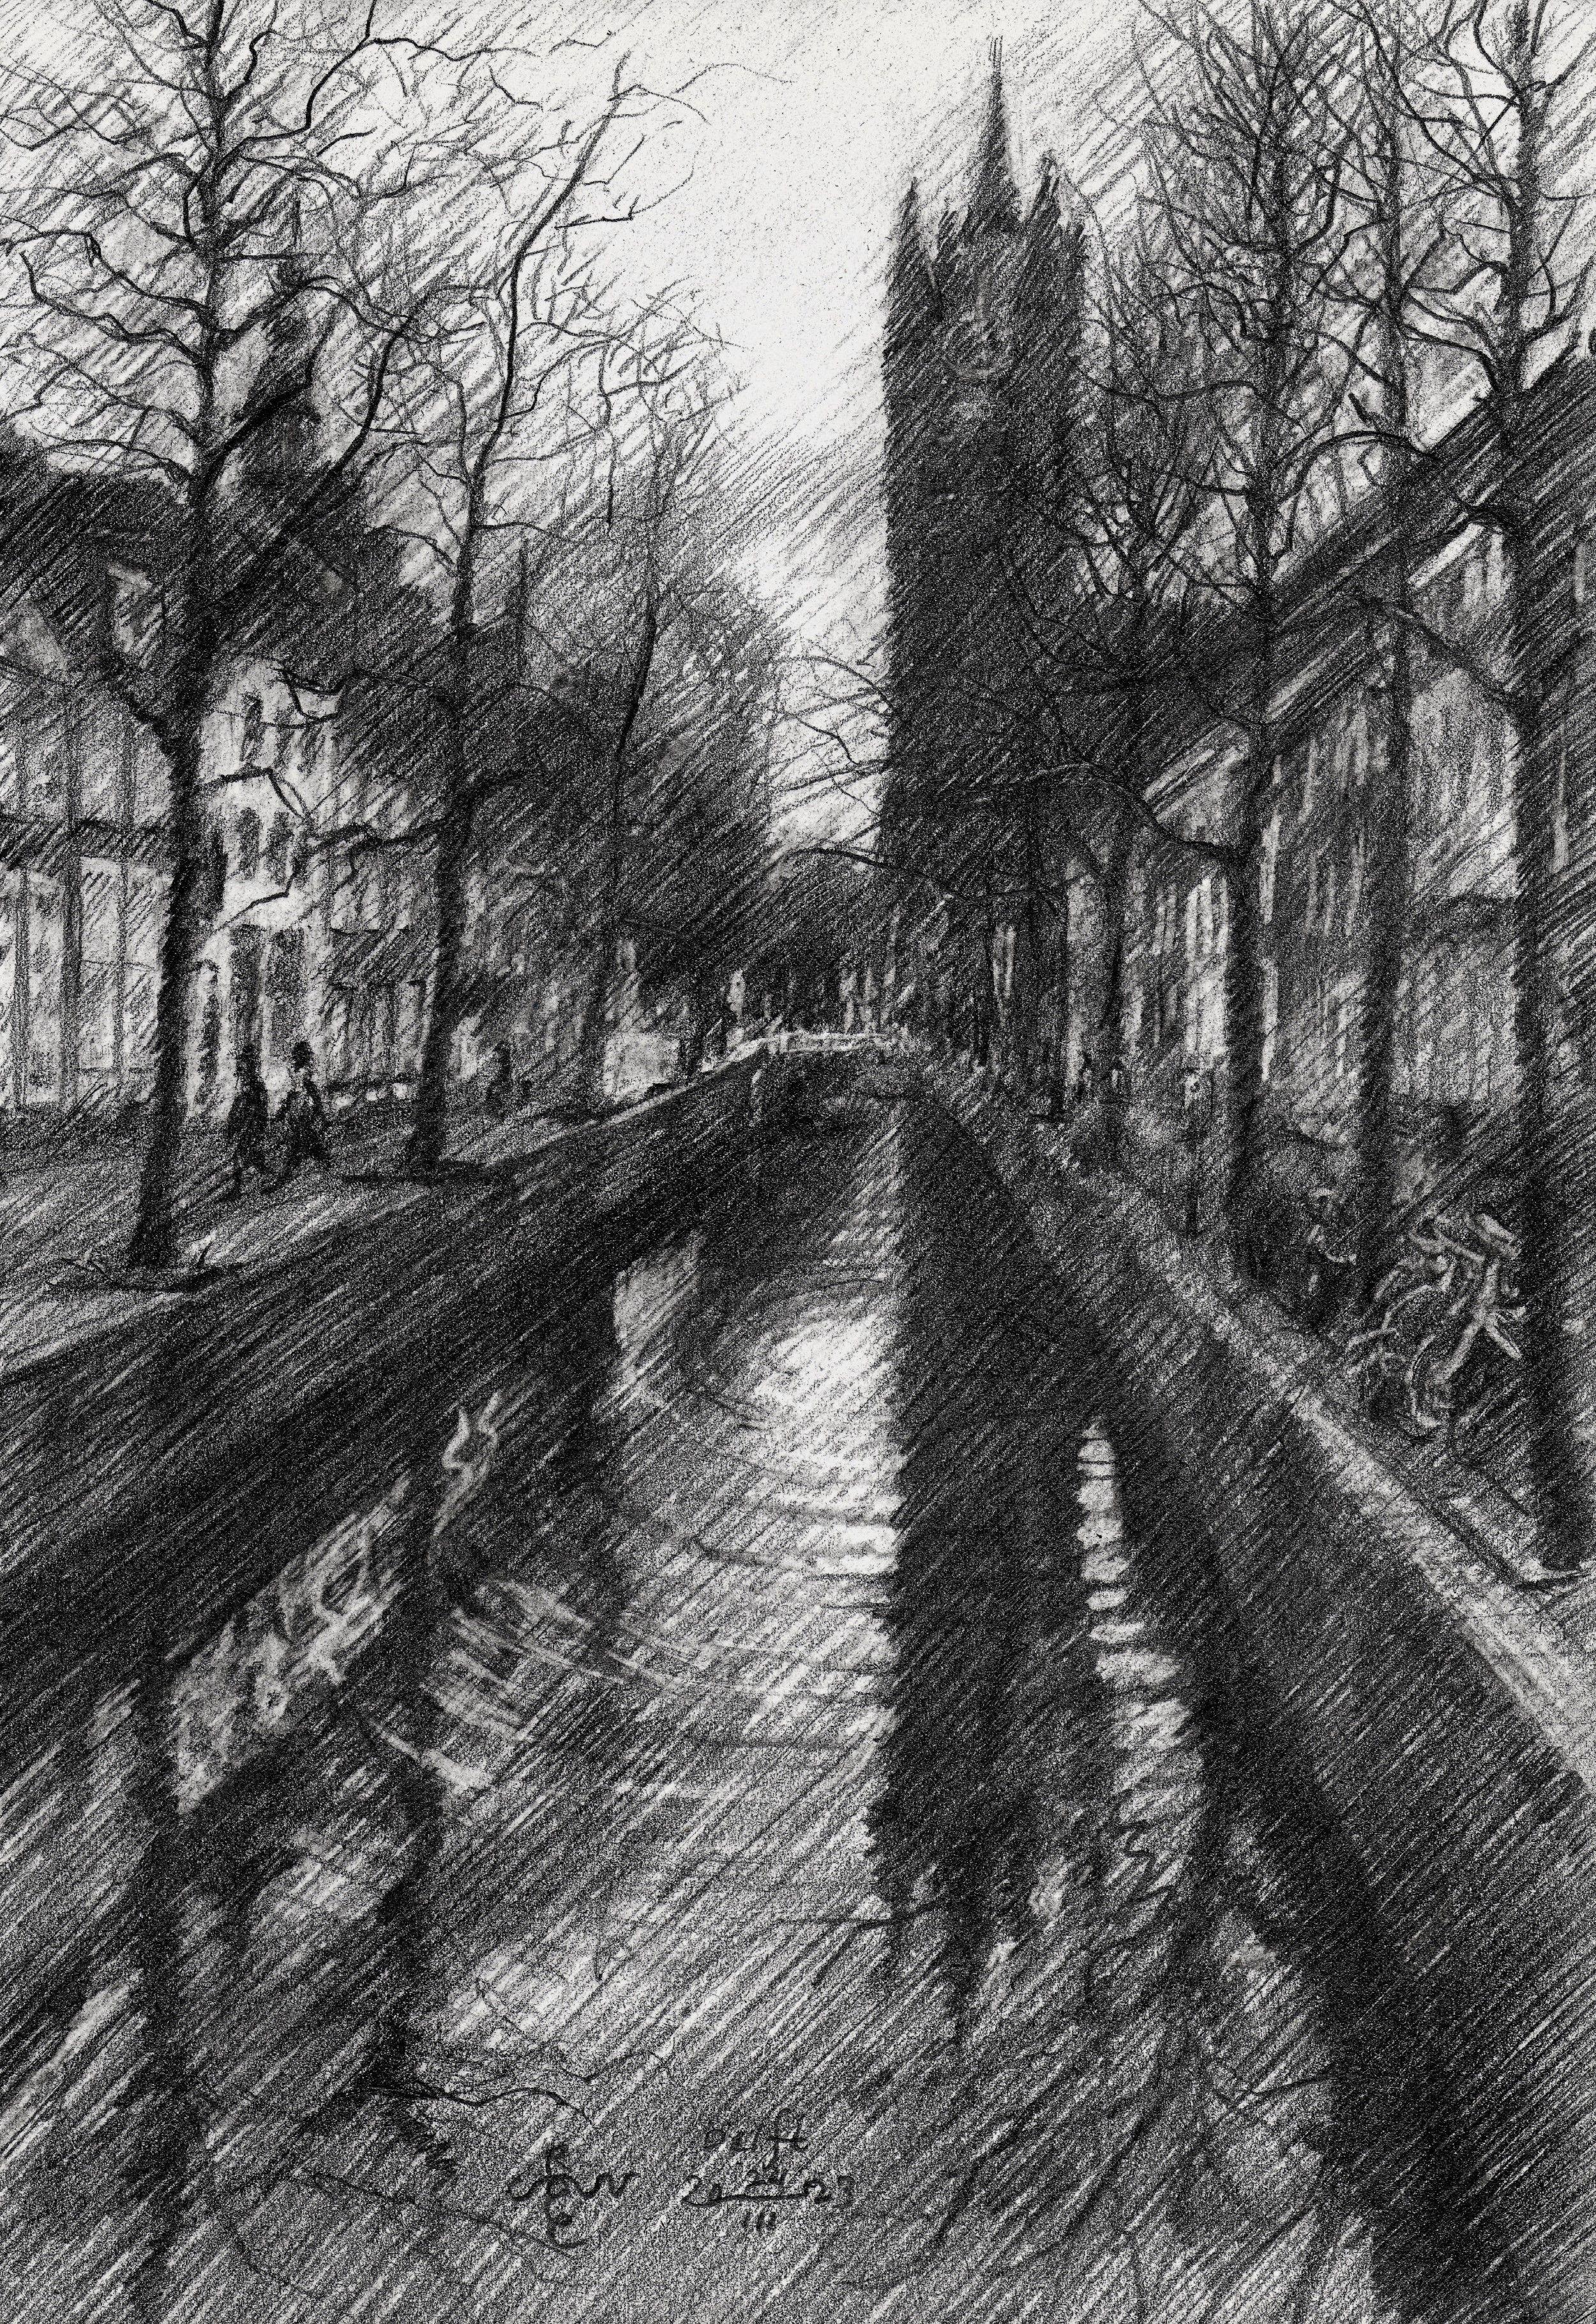 Delft - 24-03-23, dessin, crayon/crayon coloré sur papier - Art de Corne Akkers